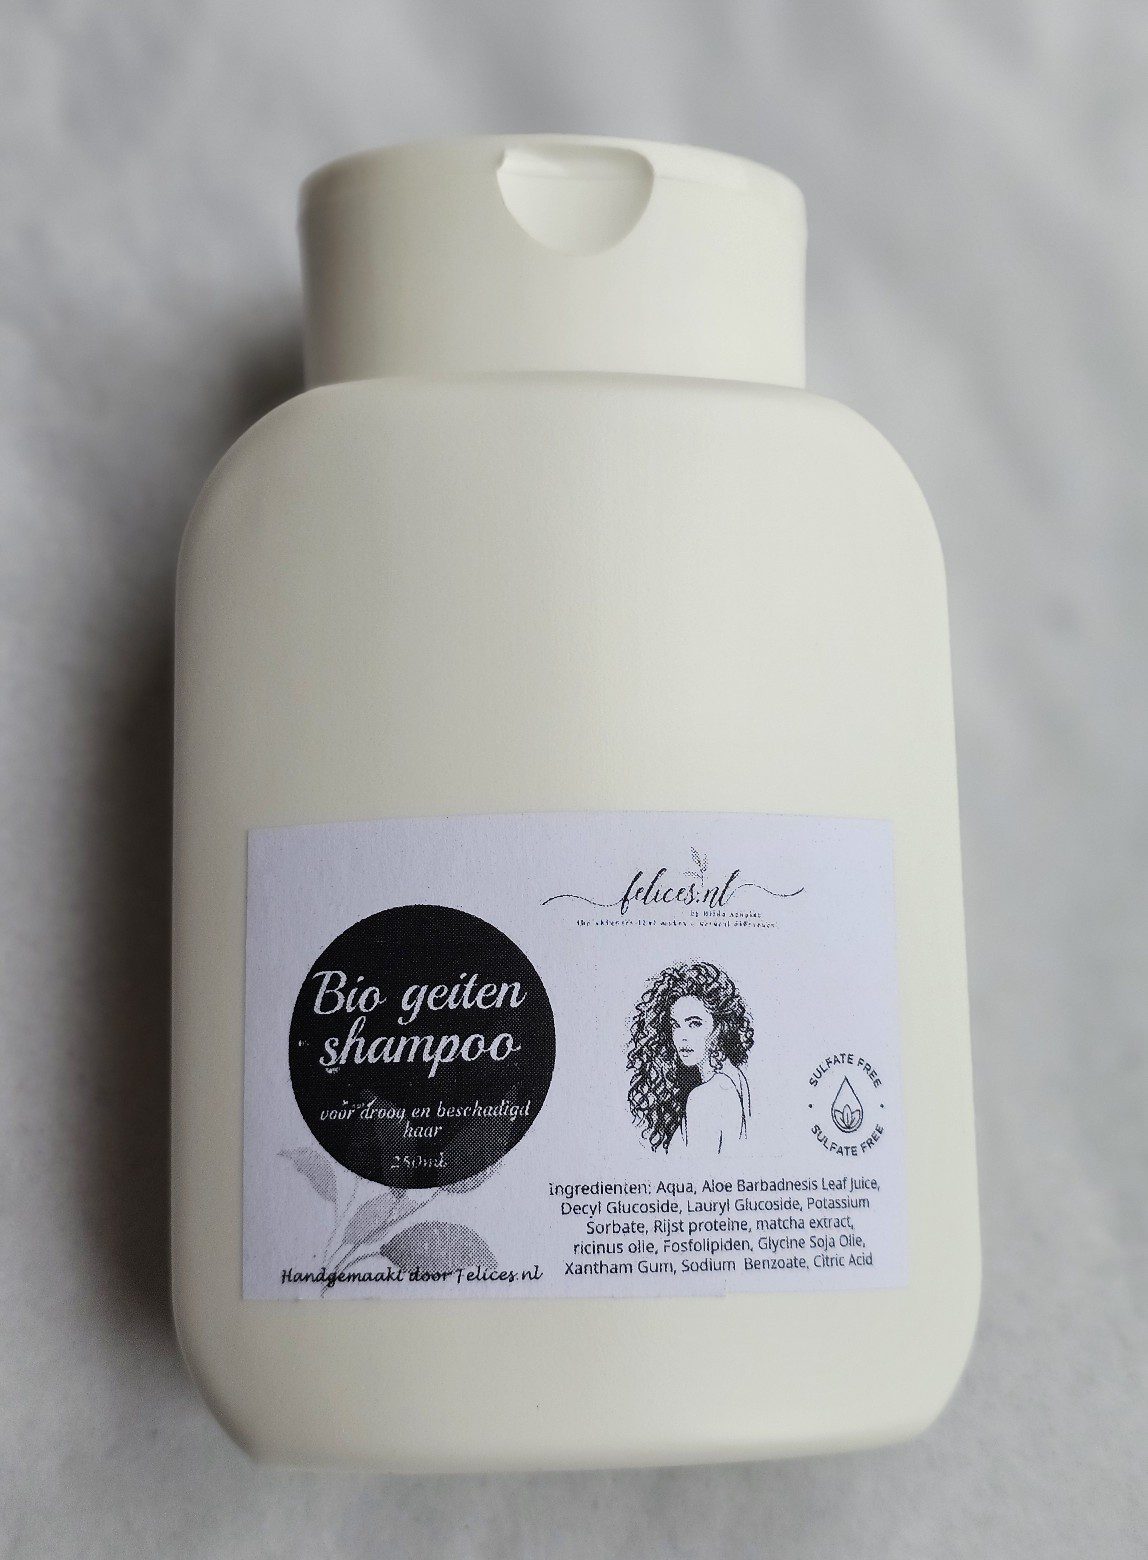 Biologische geitenmelk shampoo - phyto keratine - calendula olie - zeer droge en beschadigd haar - sulfaatvrij 250ml